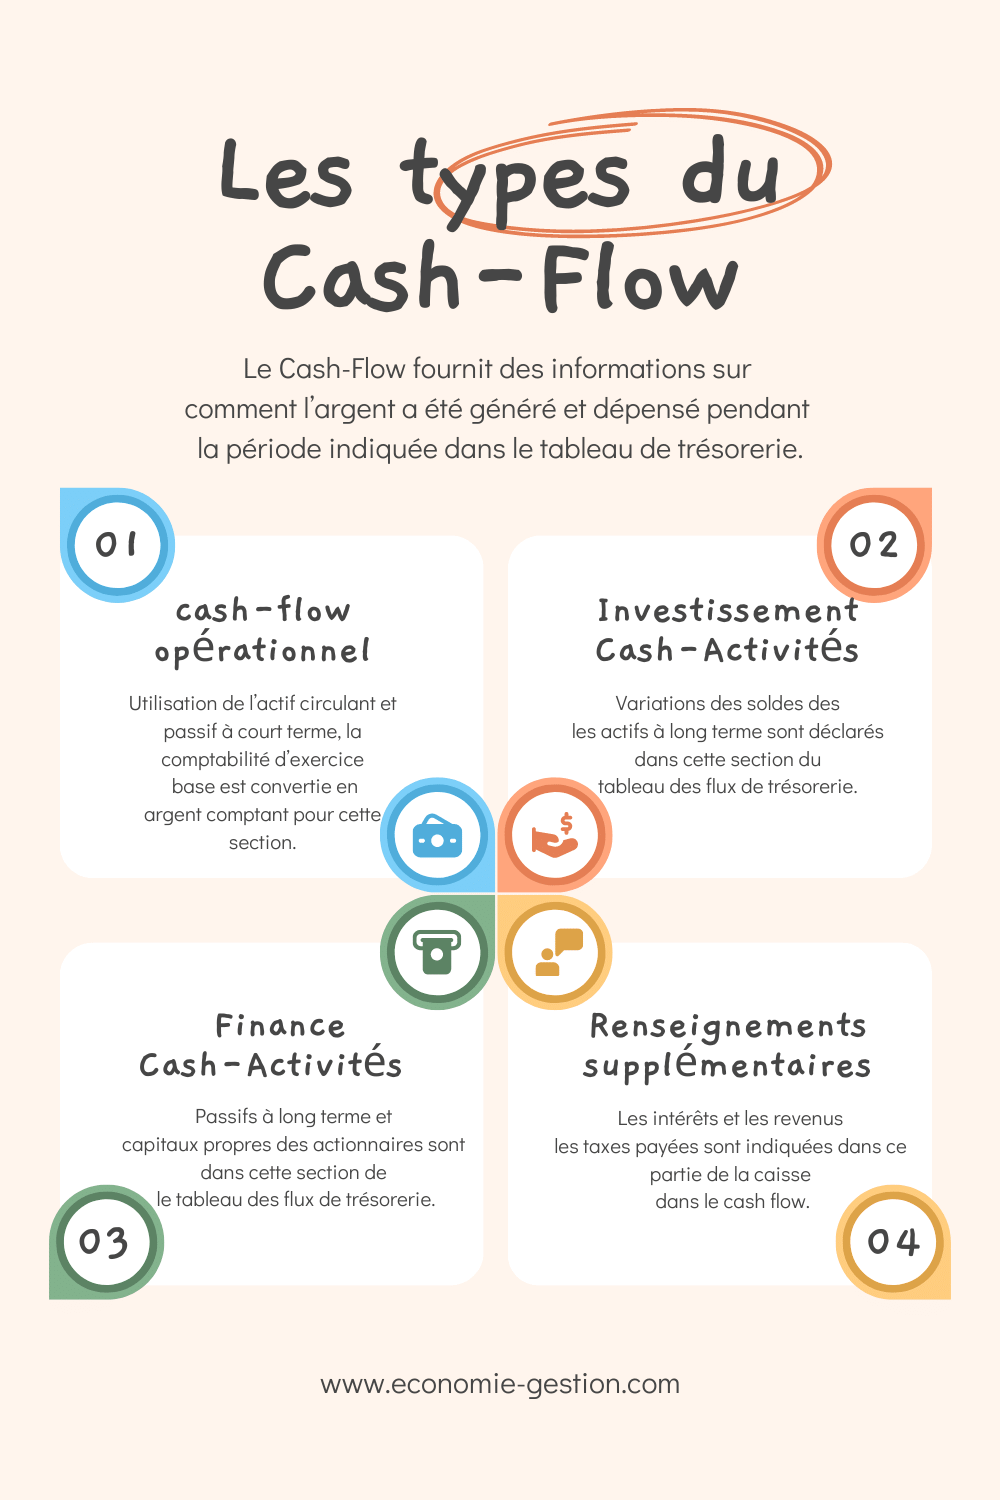 Les types du Cash-Flow